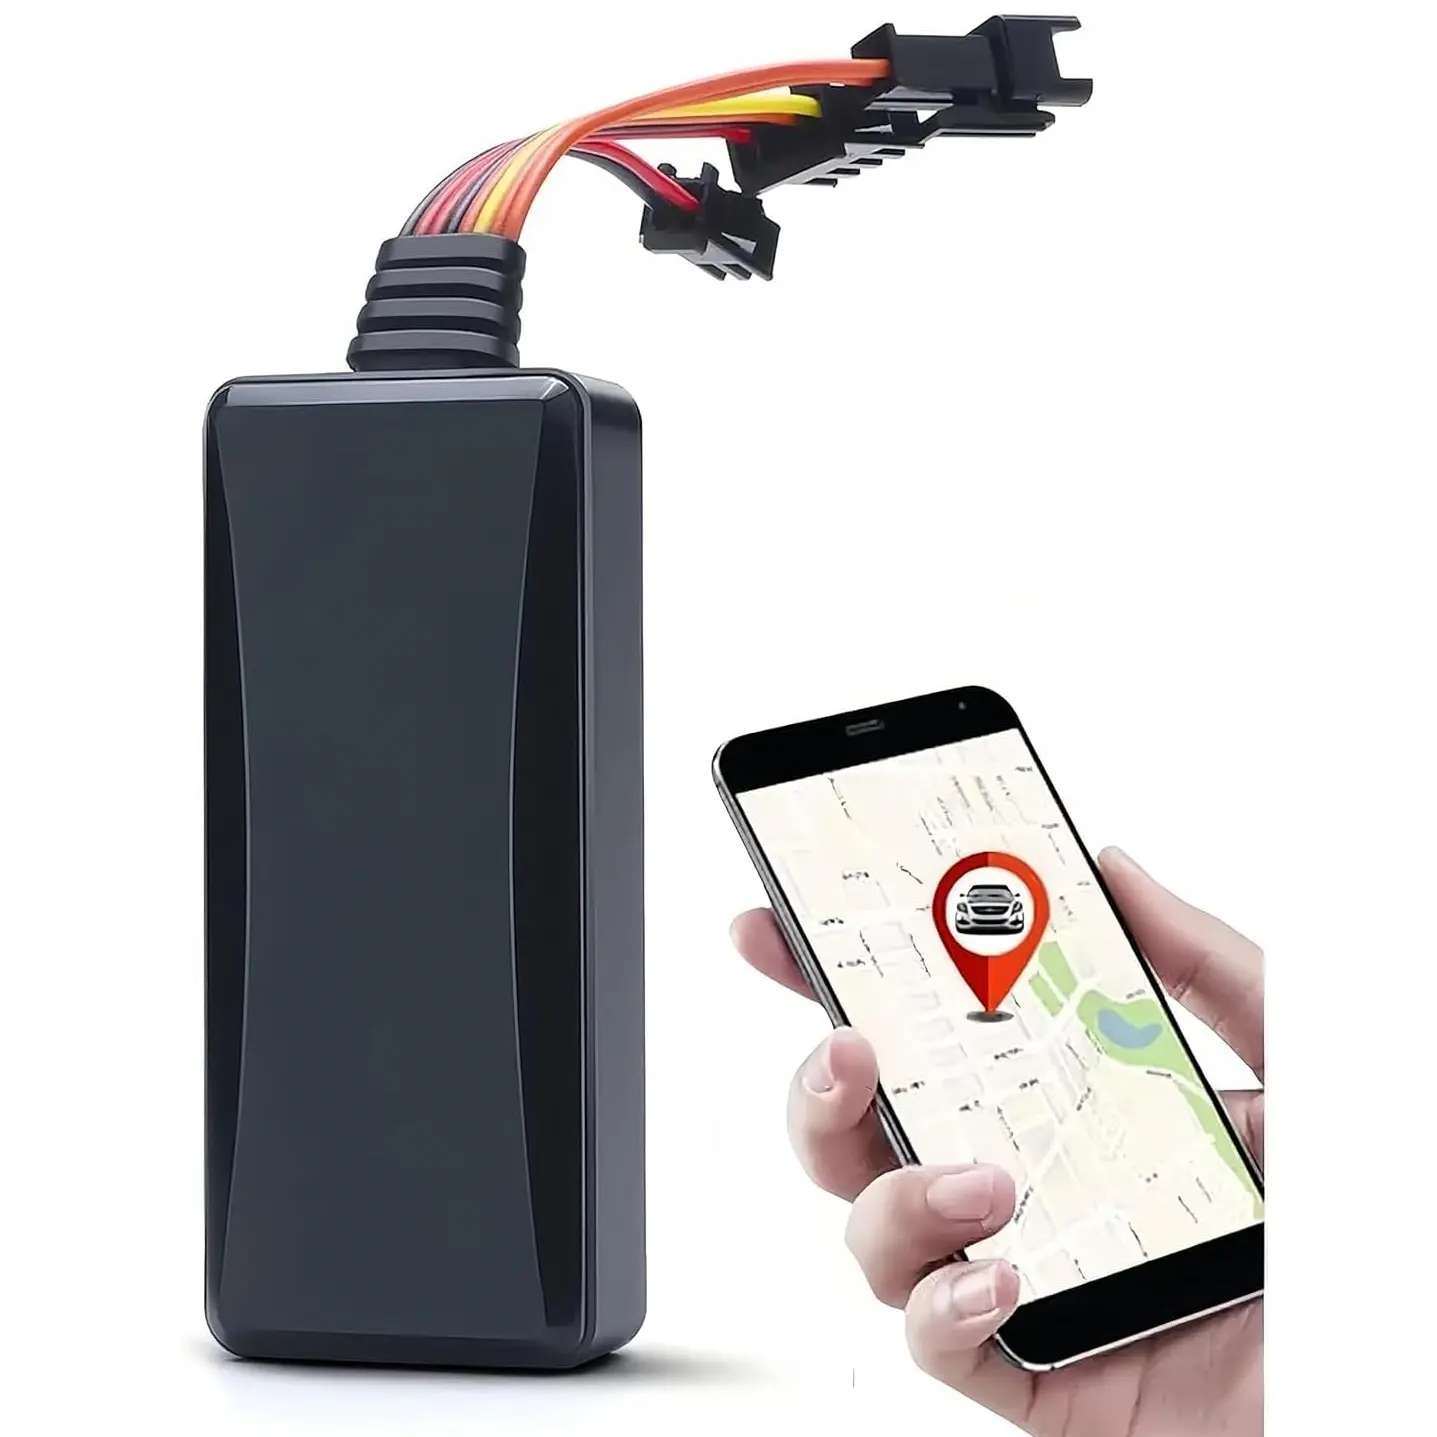 GT06 Echtzeit-Tracking-Fahrzeug-GPS-Relais-Tracker mit GSM-SIM-Karten-Tracking-Gerät für Auto